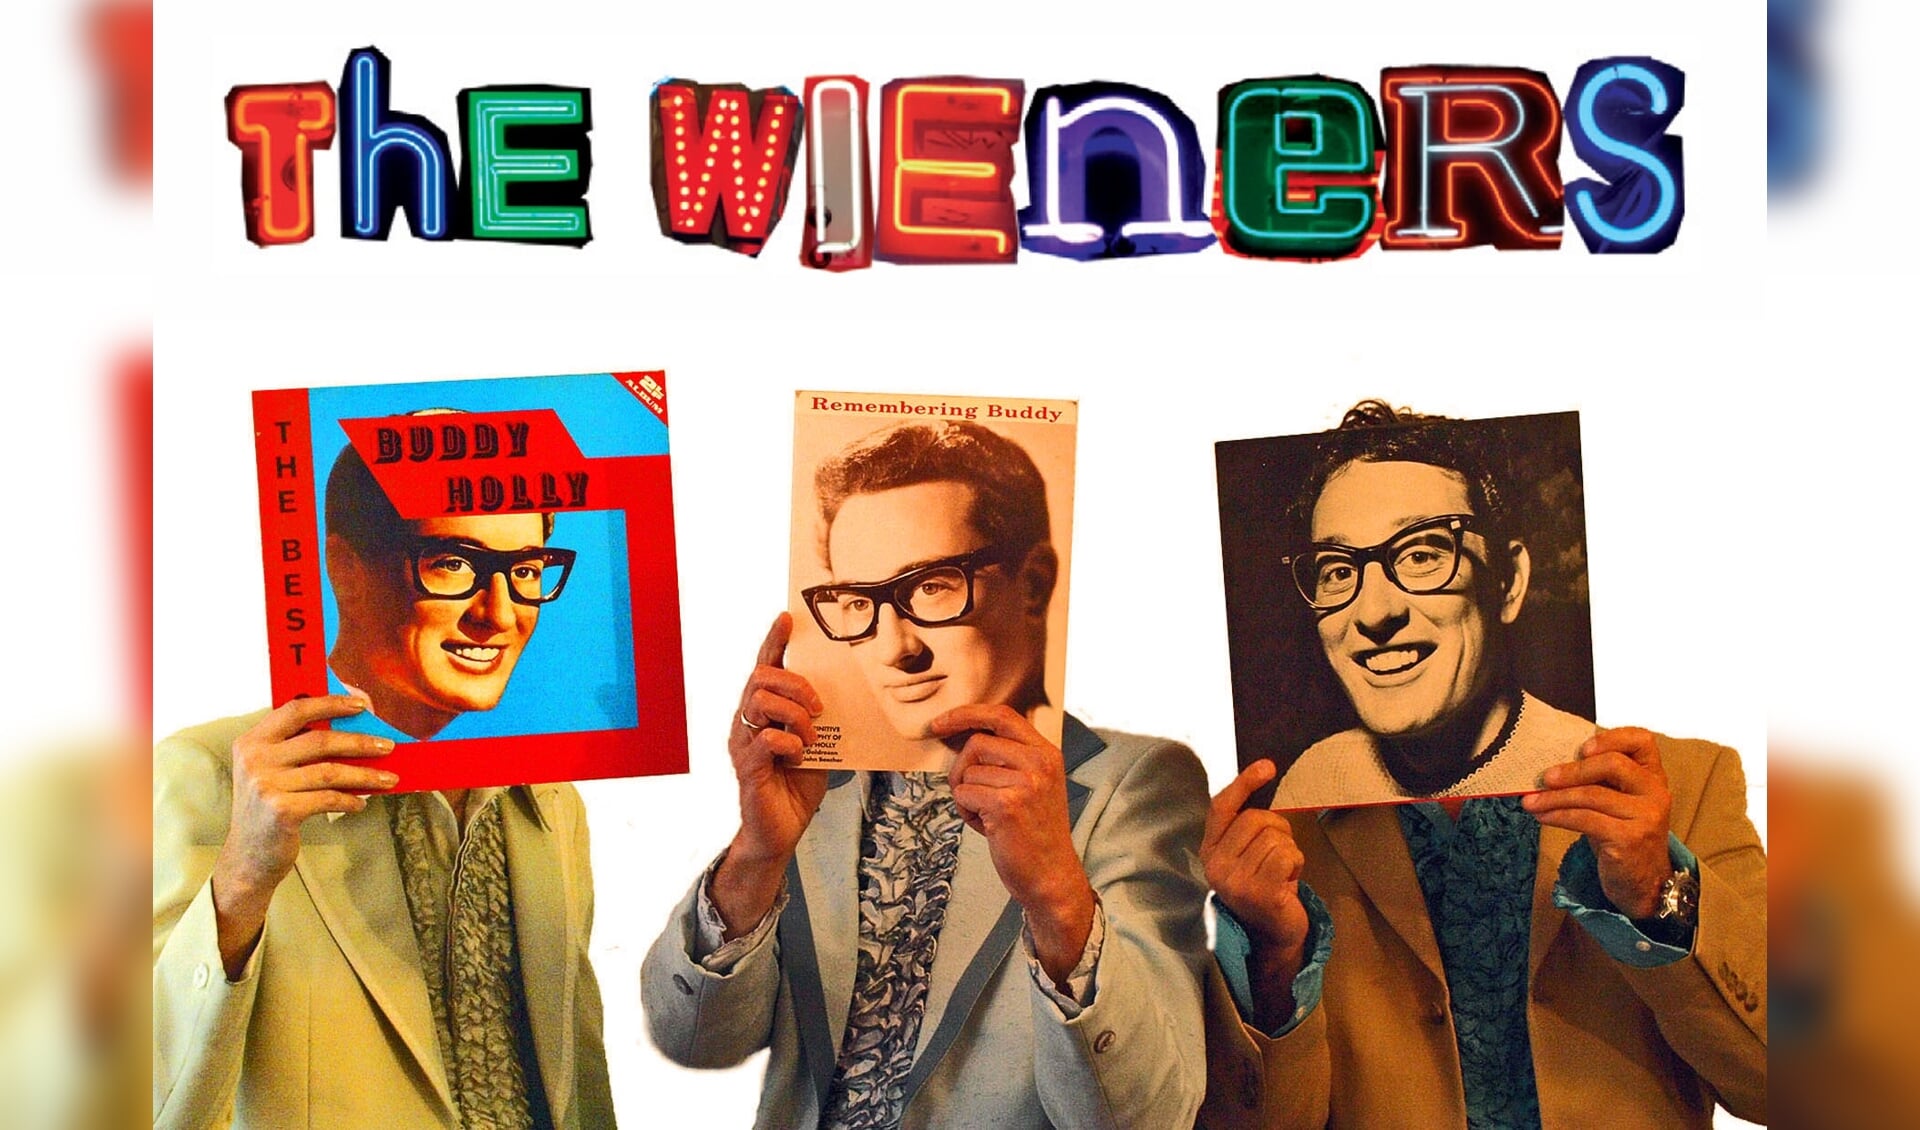 The Wieners 